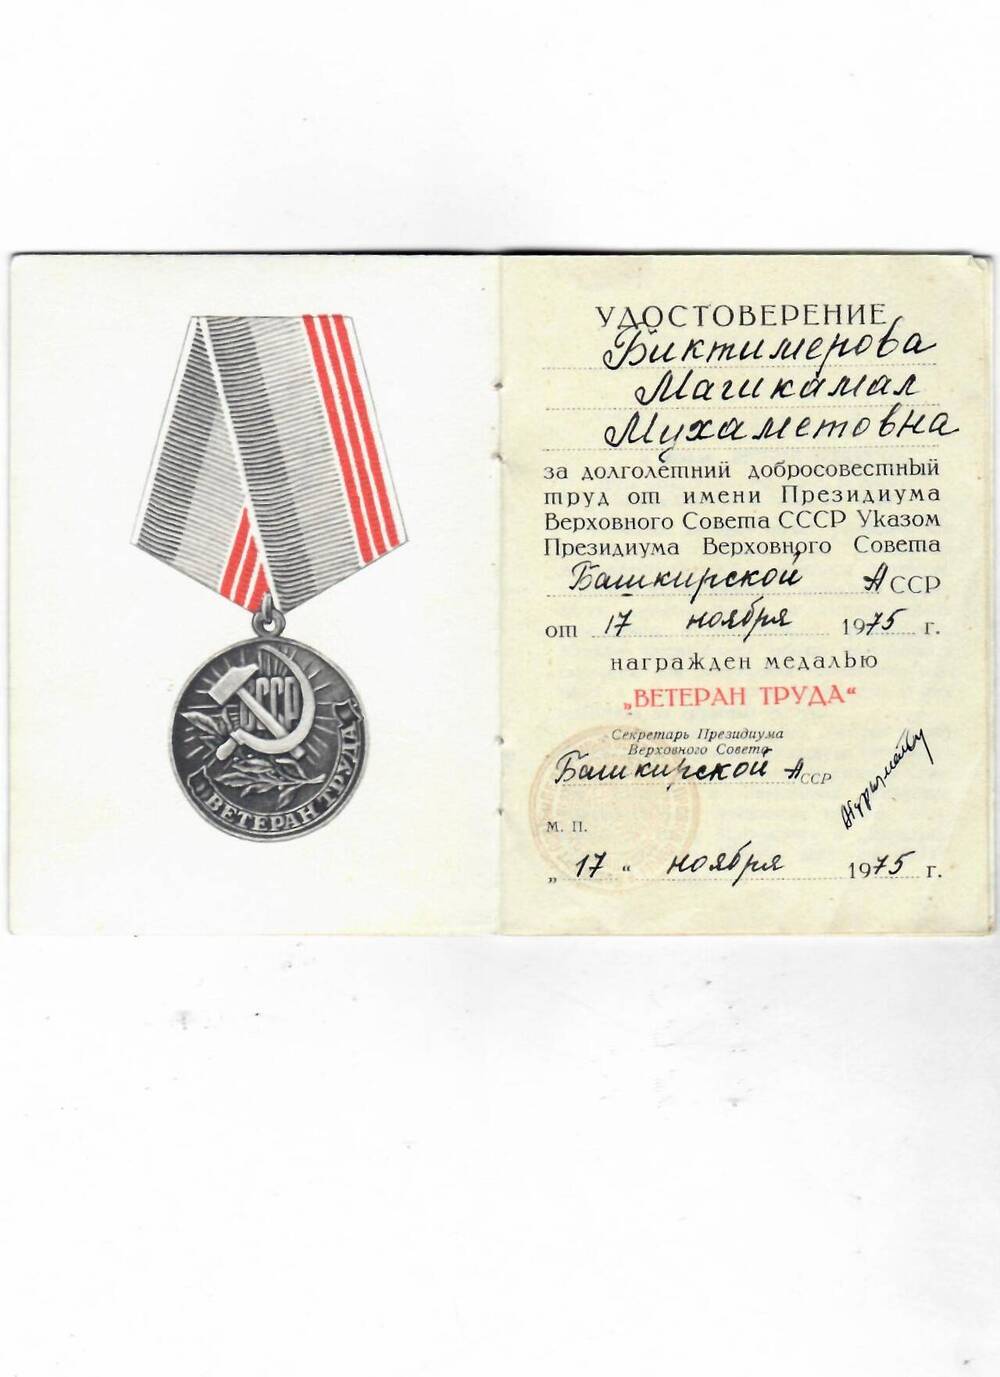 Удостоверение к медали Ветеран труда Биктимировой М.М. Дата выдачи 17.11.1975 г.